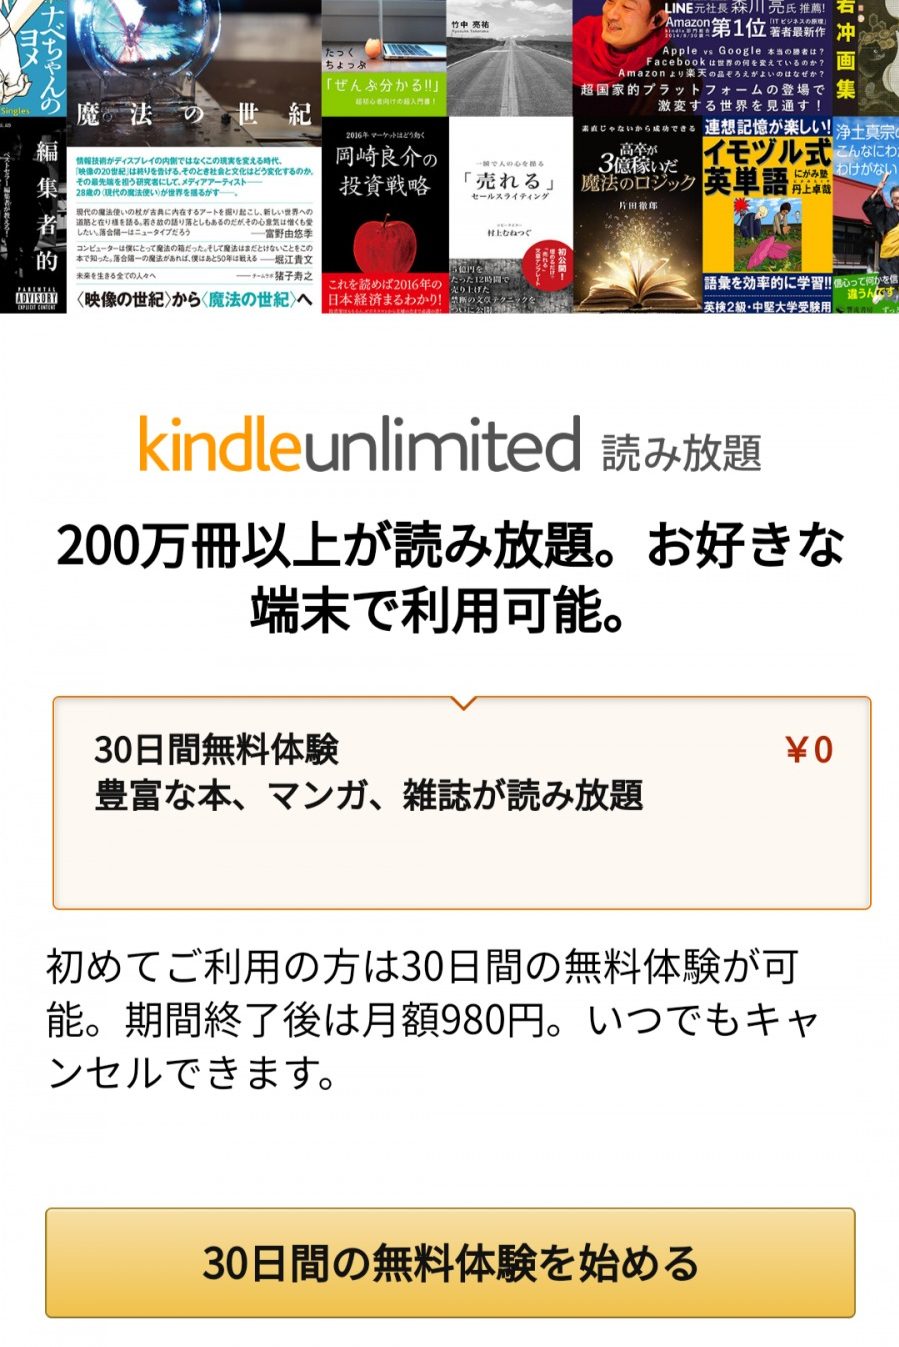 21年版 Kindle Unlimited 感想を徹底的にレビューします 結論 ビジネス書をお得に読みたい人におすすめ No Book No Life